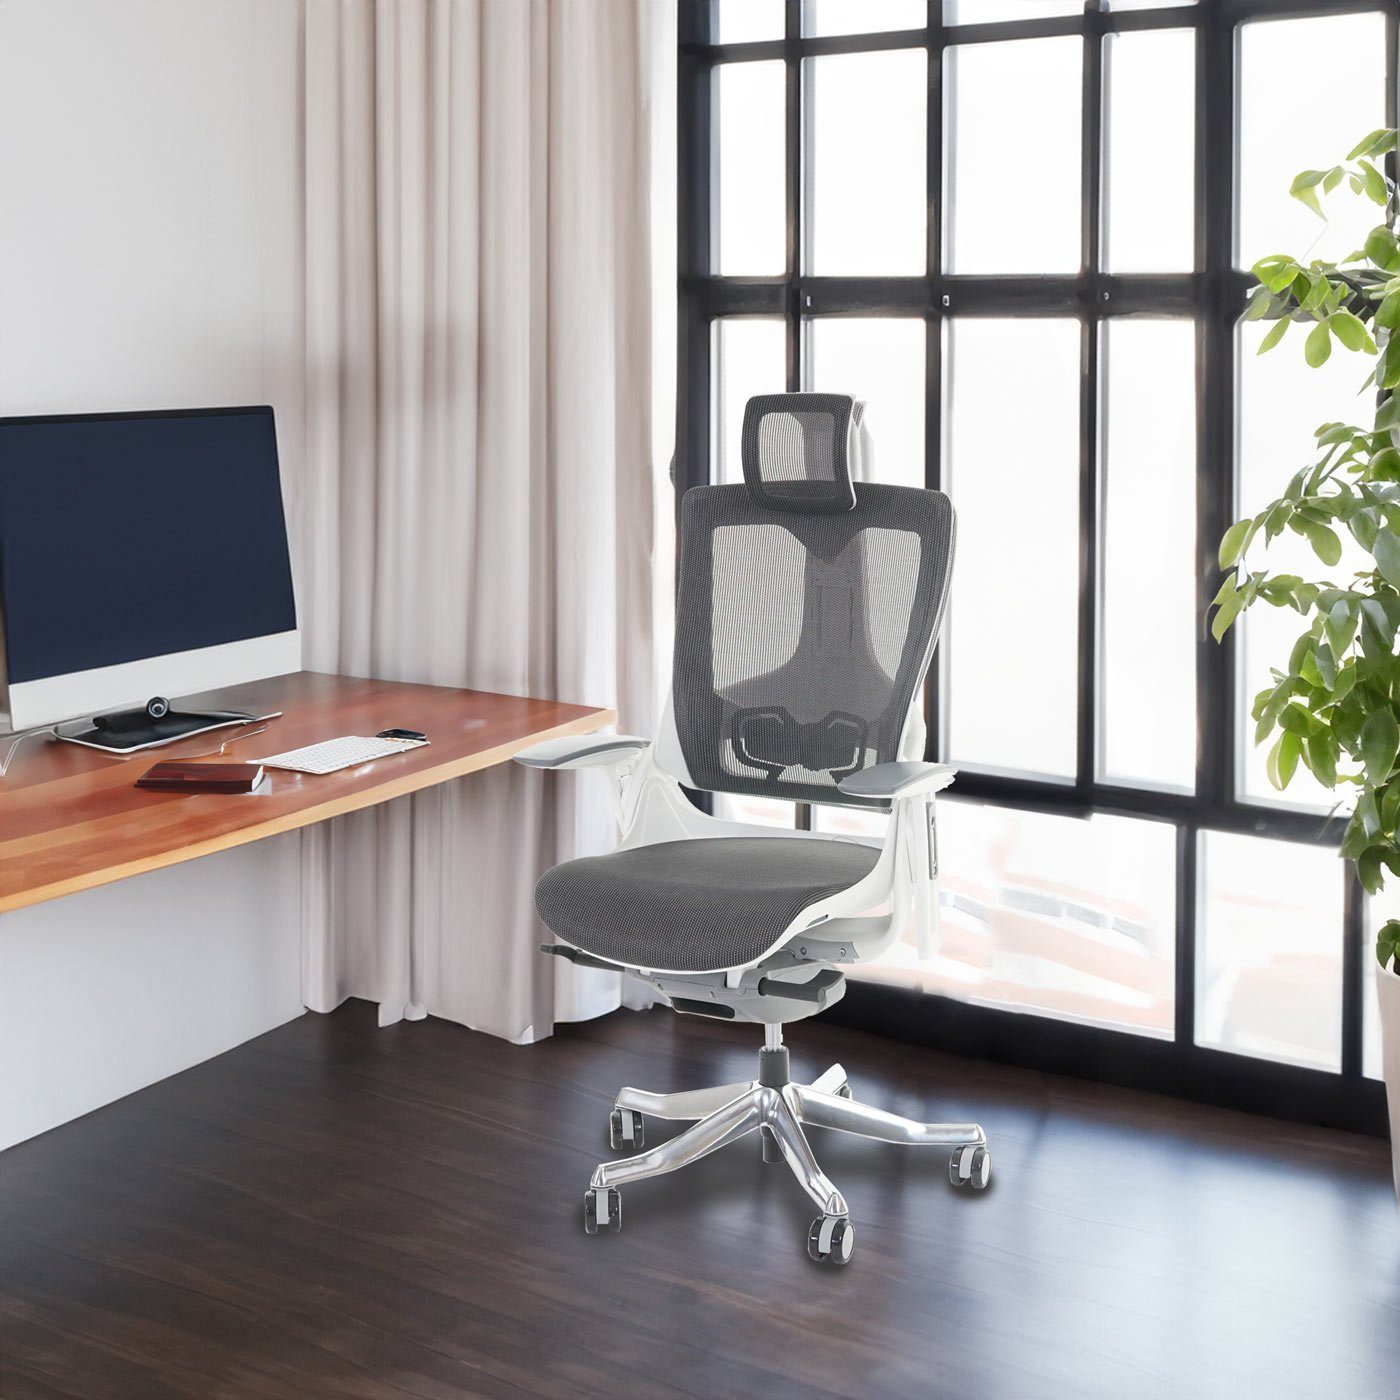 MCW Schreibtischstuhl Adelaide, | Rückenlehne, schwarz-grau Netzbespannung weiß/grau Luftzirkulation für Höhenverstellbare